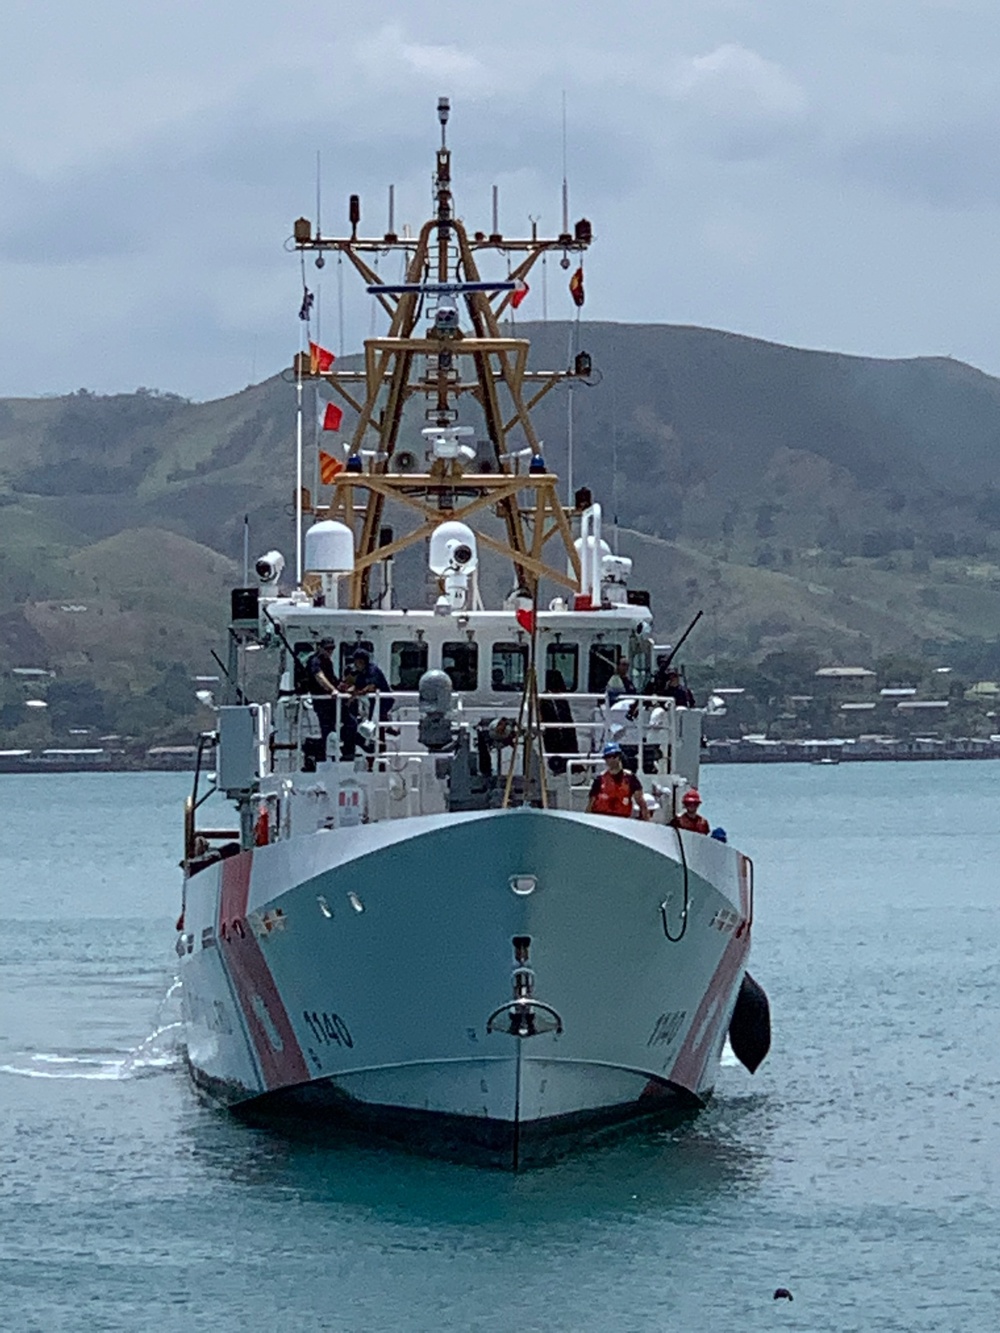 U.S Coast Guard conducts port visit in Port Moresby, Papua New Guinea